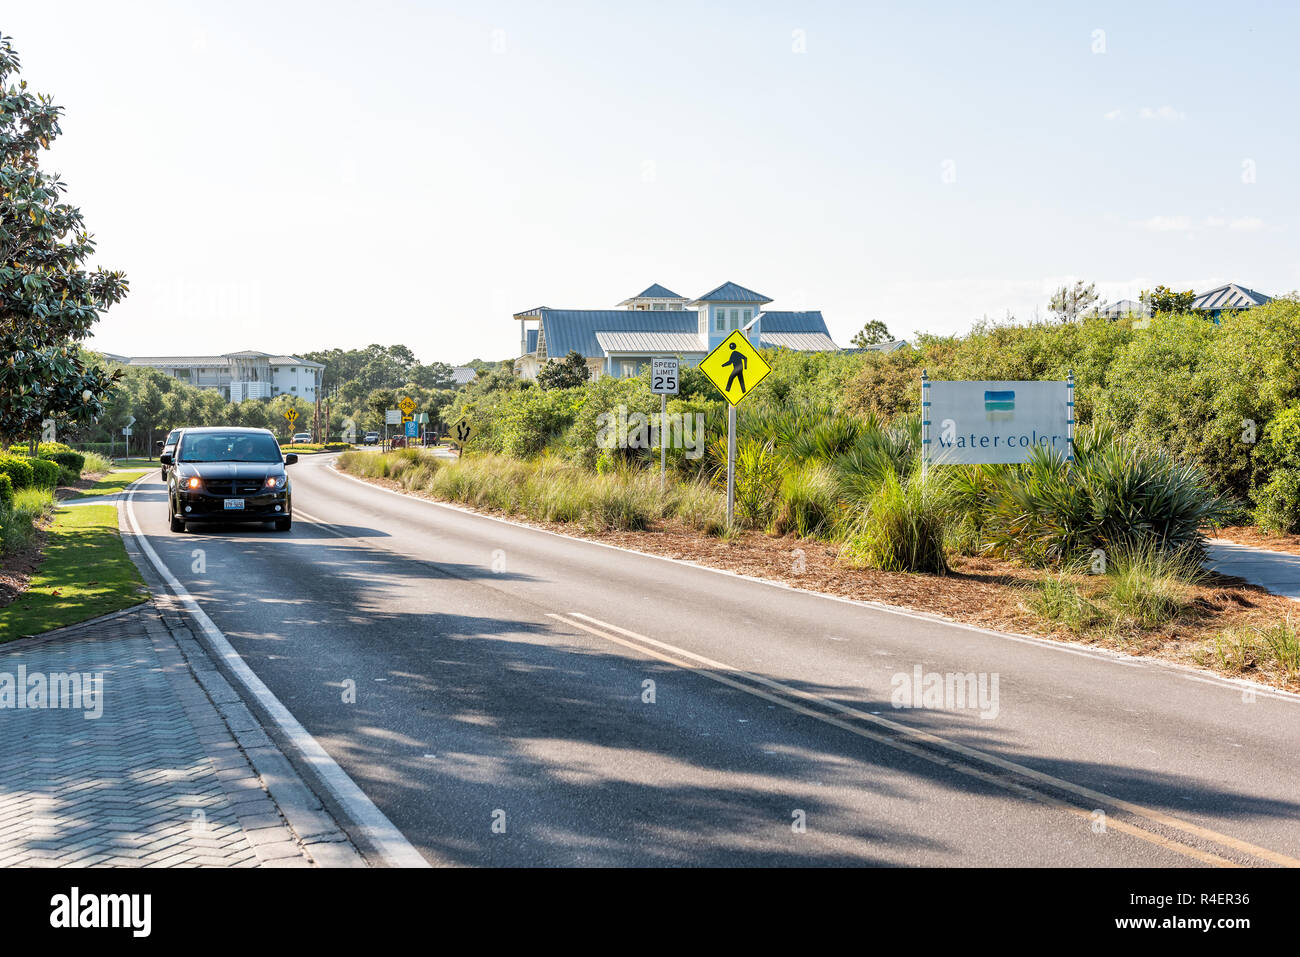 Seaside, ESTADOS UNIDOS - 25 de abril de 2018: Acuarela inn aguas color firmar en la carretera con los coches en la ciudad aldea por la playa durante el día soleado en la Florida Panhandle g Foto de stock